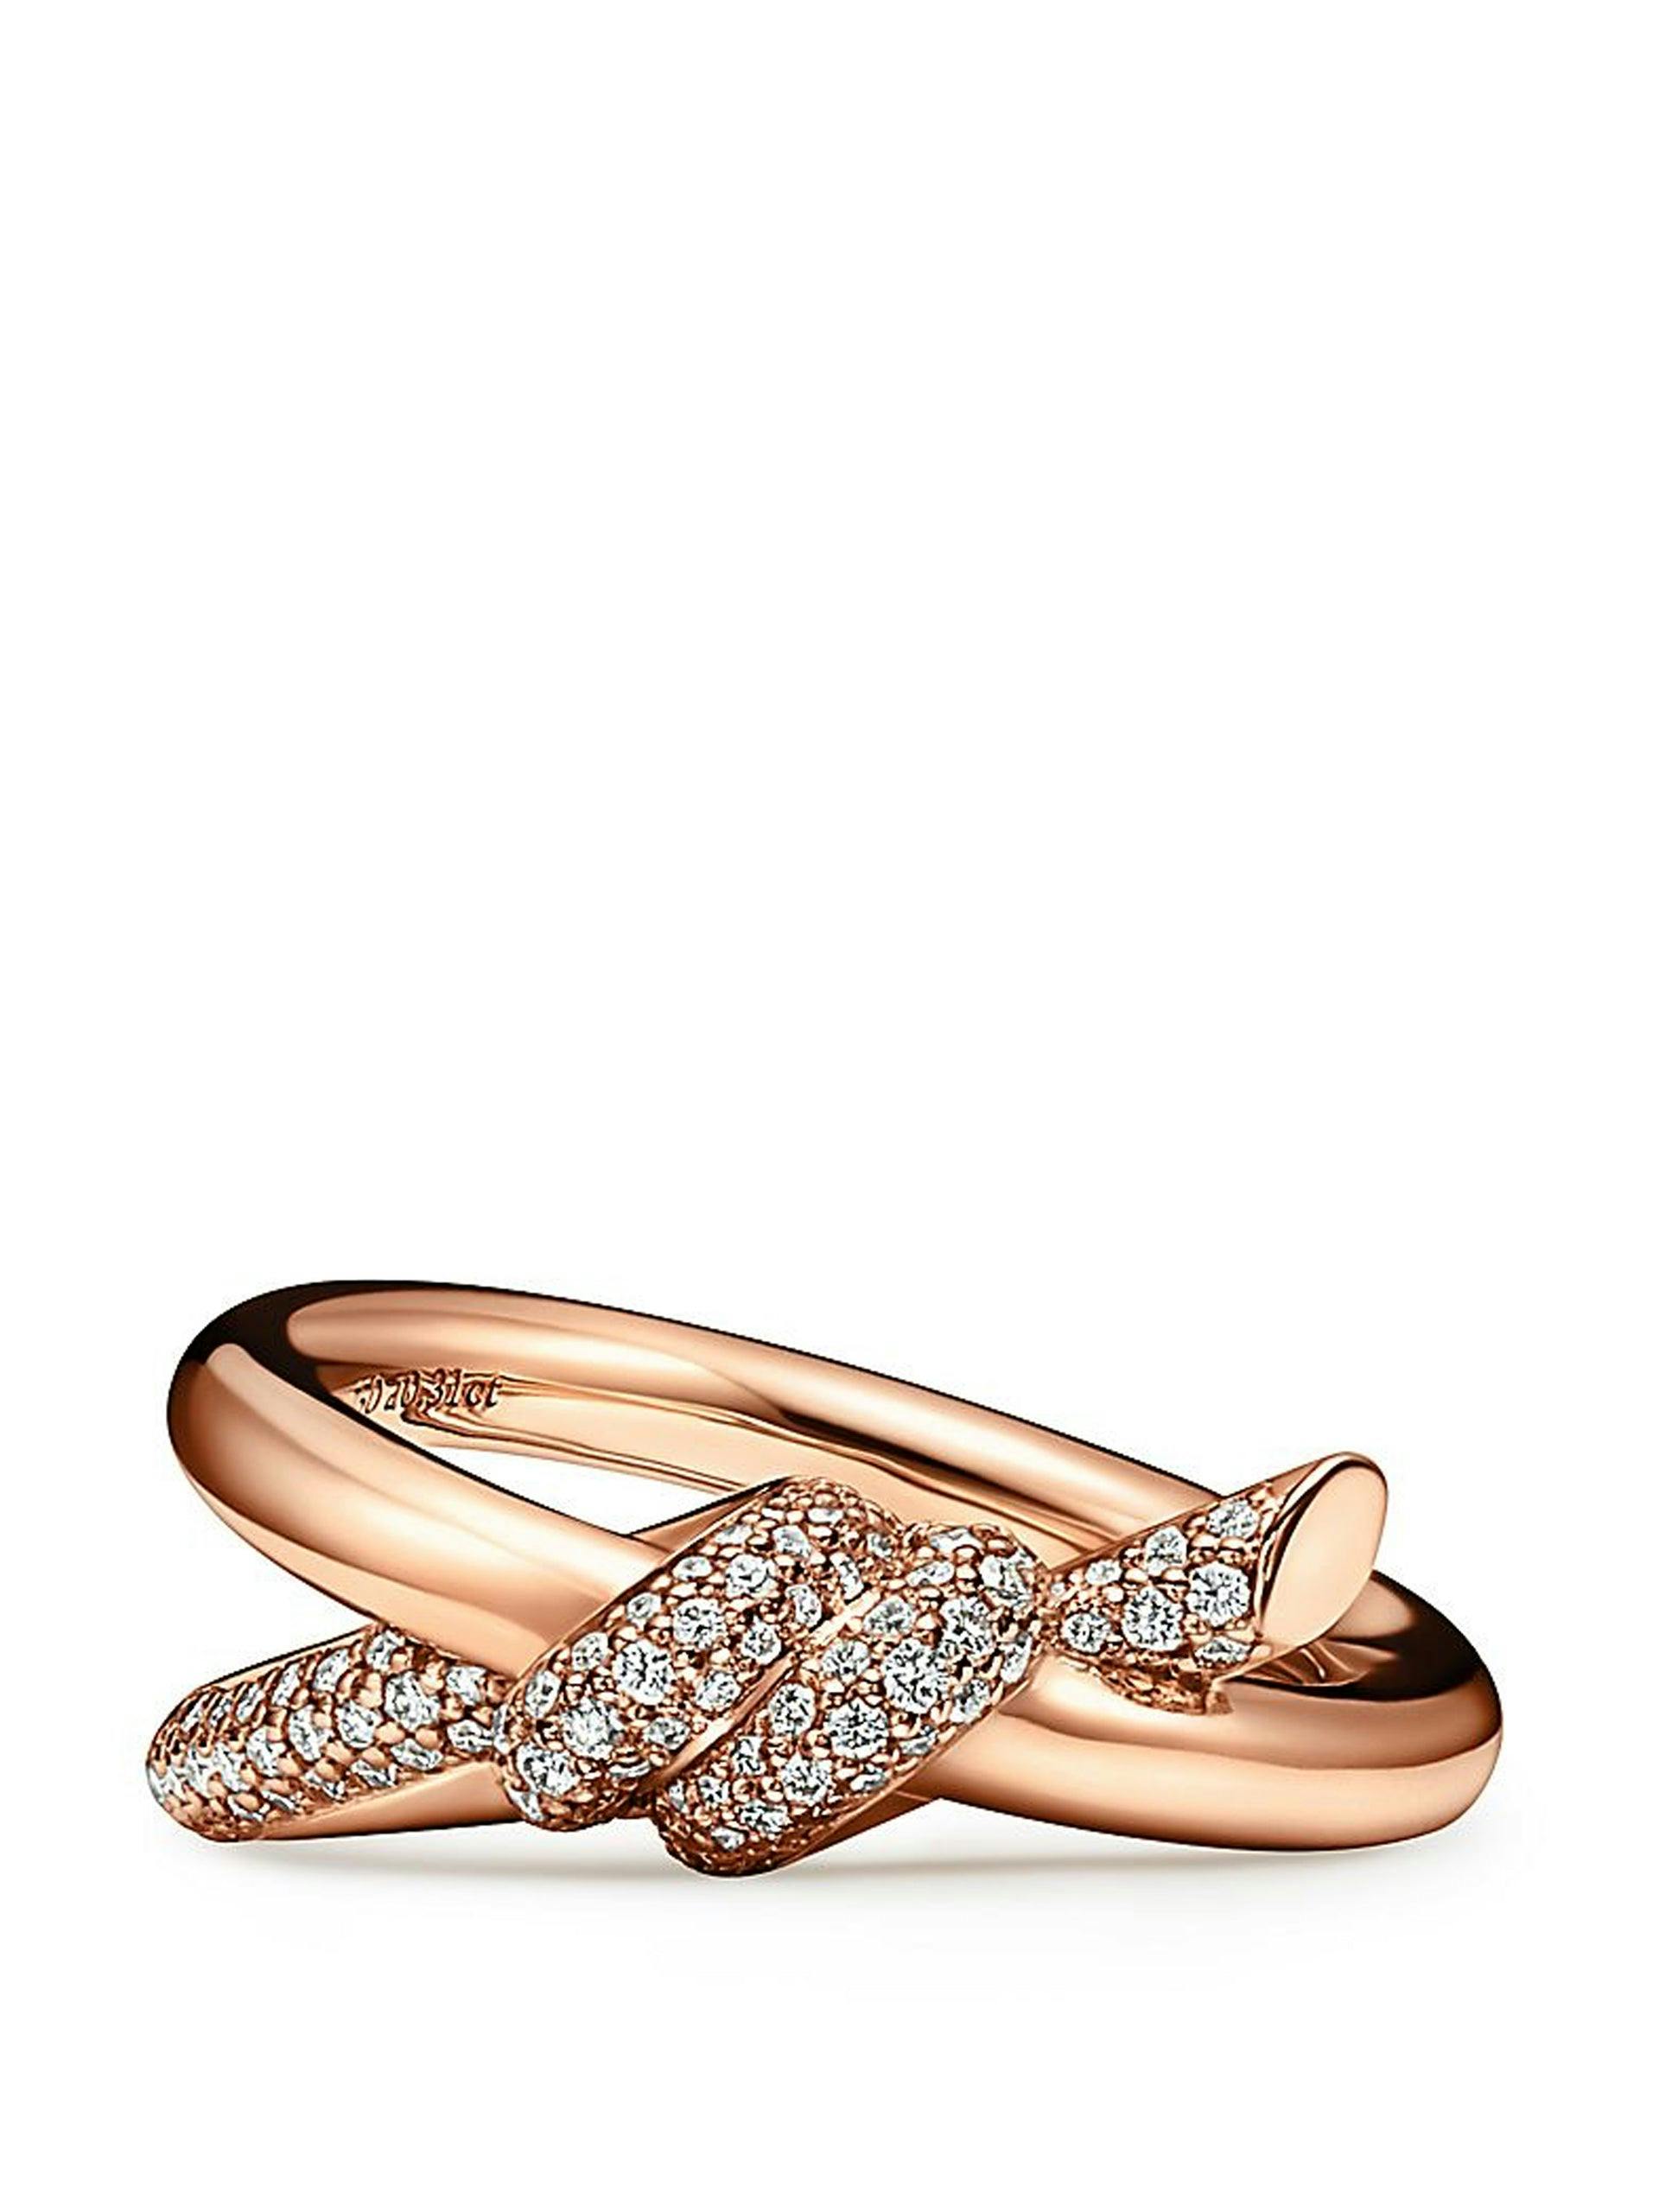 Rose gold diamond detail knot ring